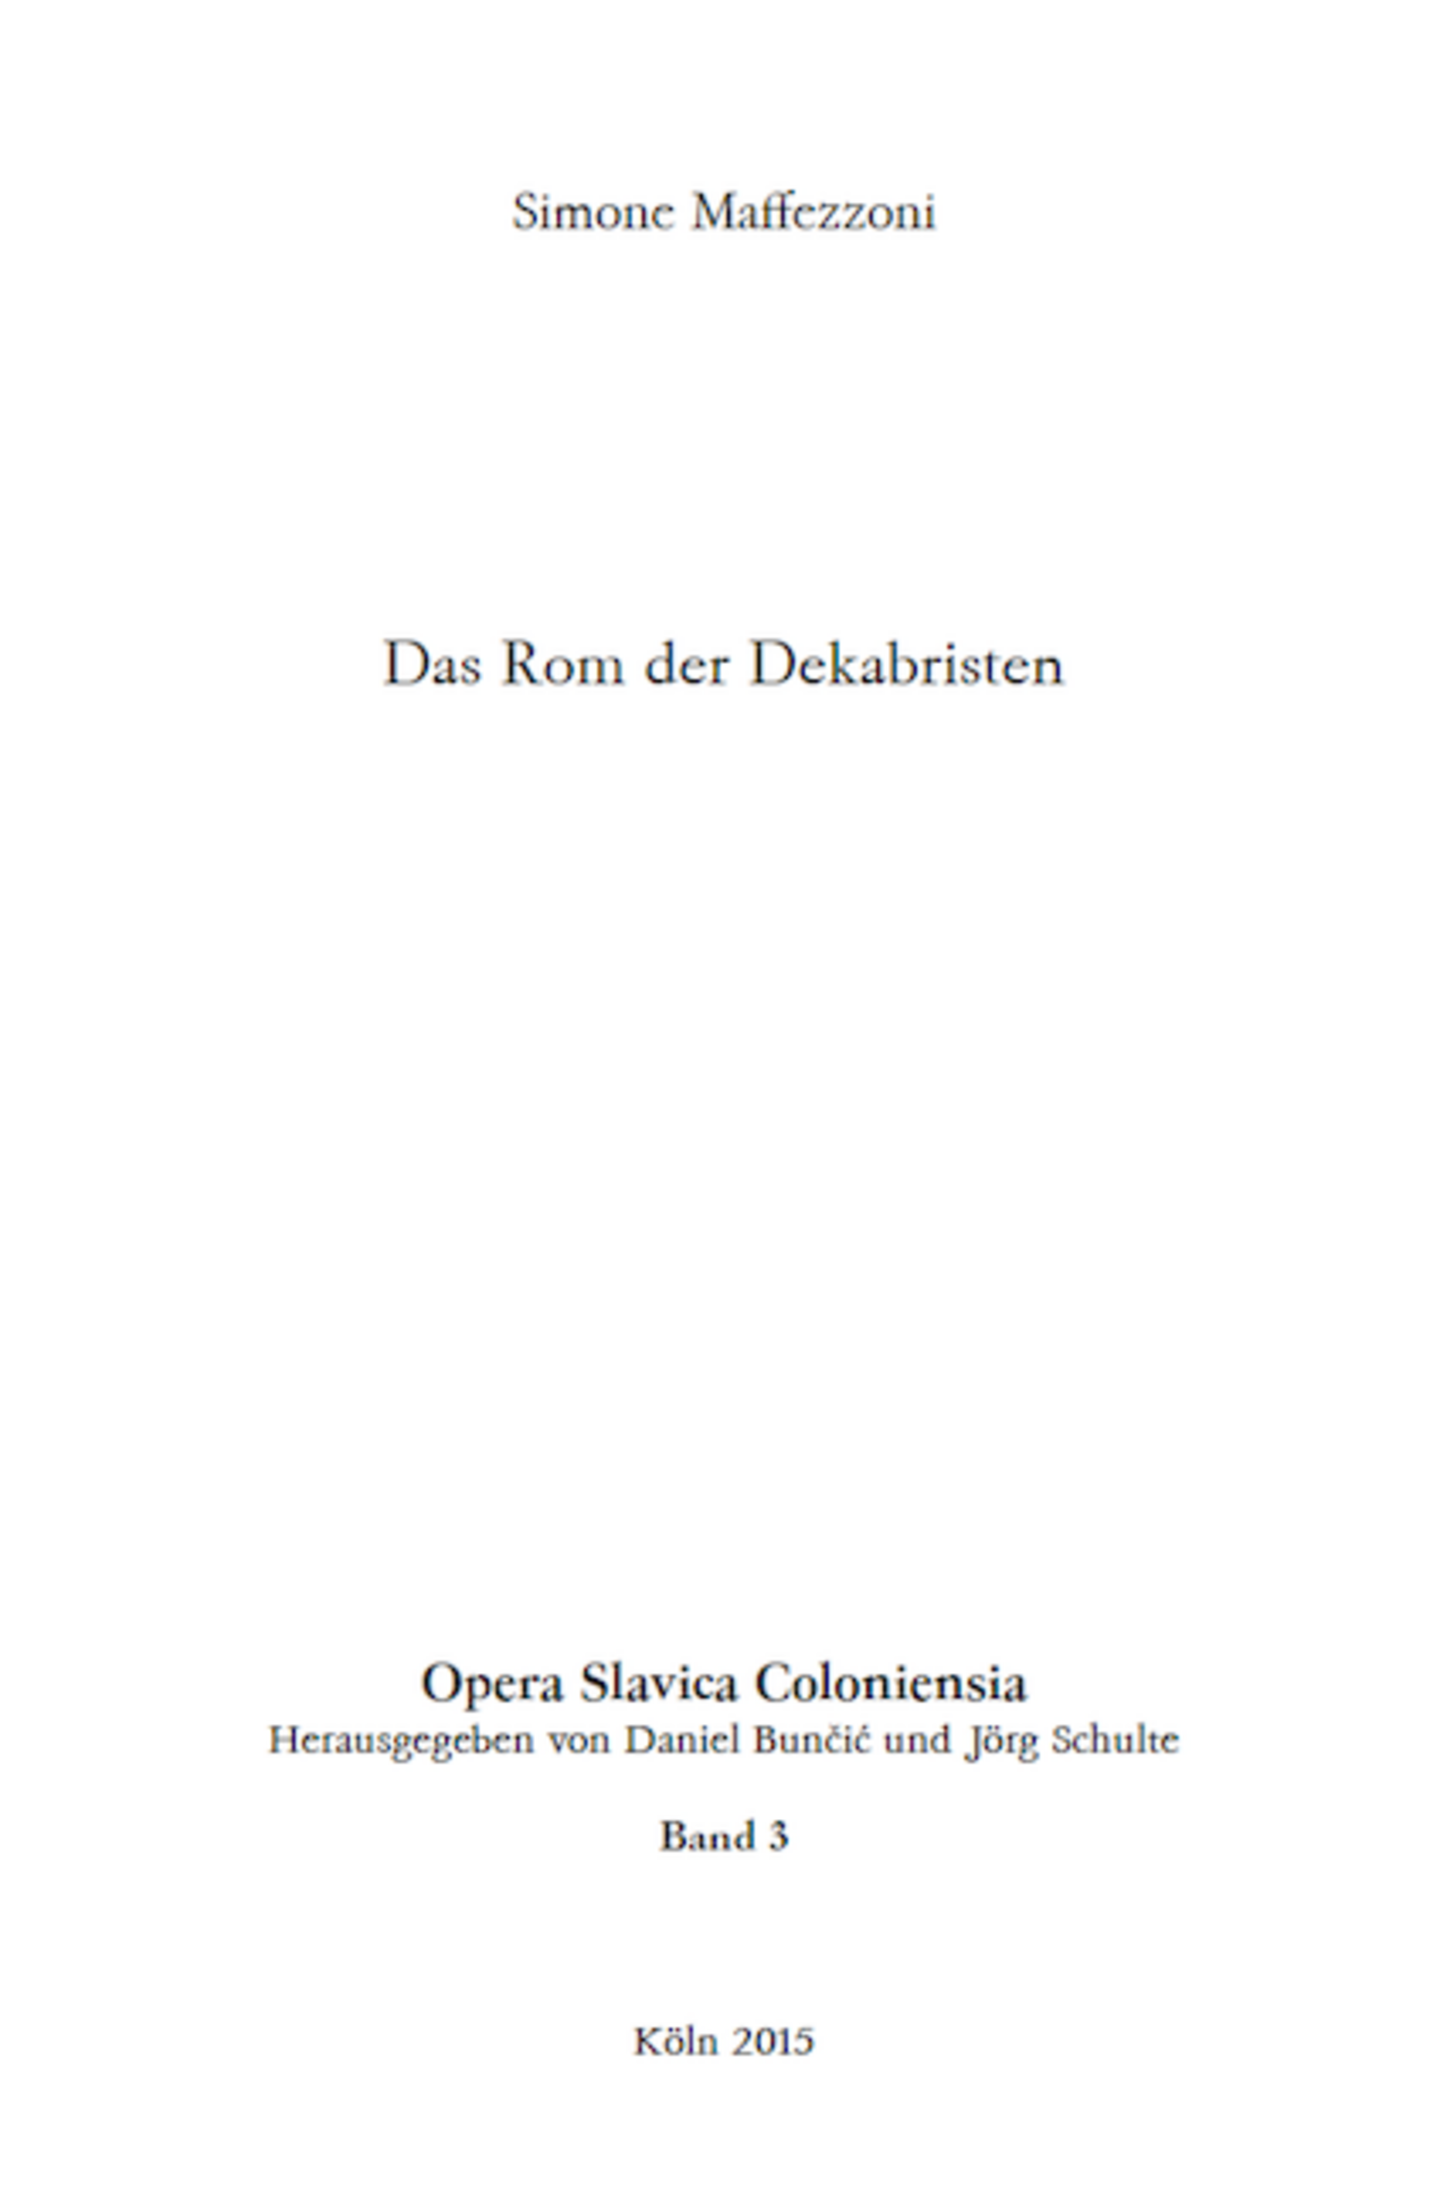 Opera Slavica Coloniensia, Bd. 3: Simone Maffezzoni (2015) Das Rom der Dekabristen